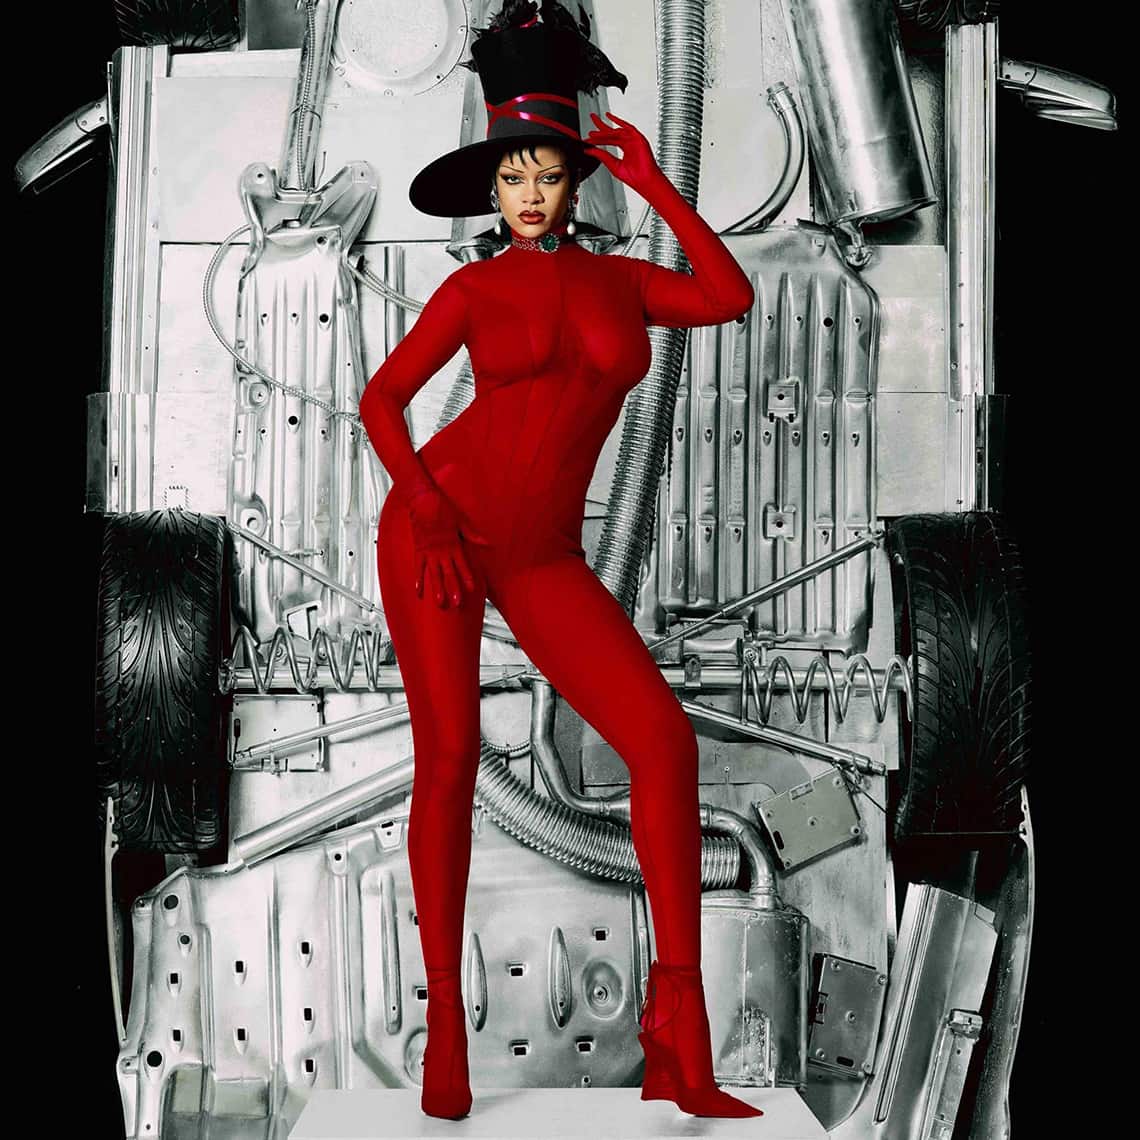 Artist Rihanna wears red full body jumpsuit by Mugler in front of car underside